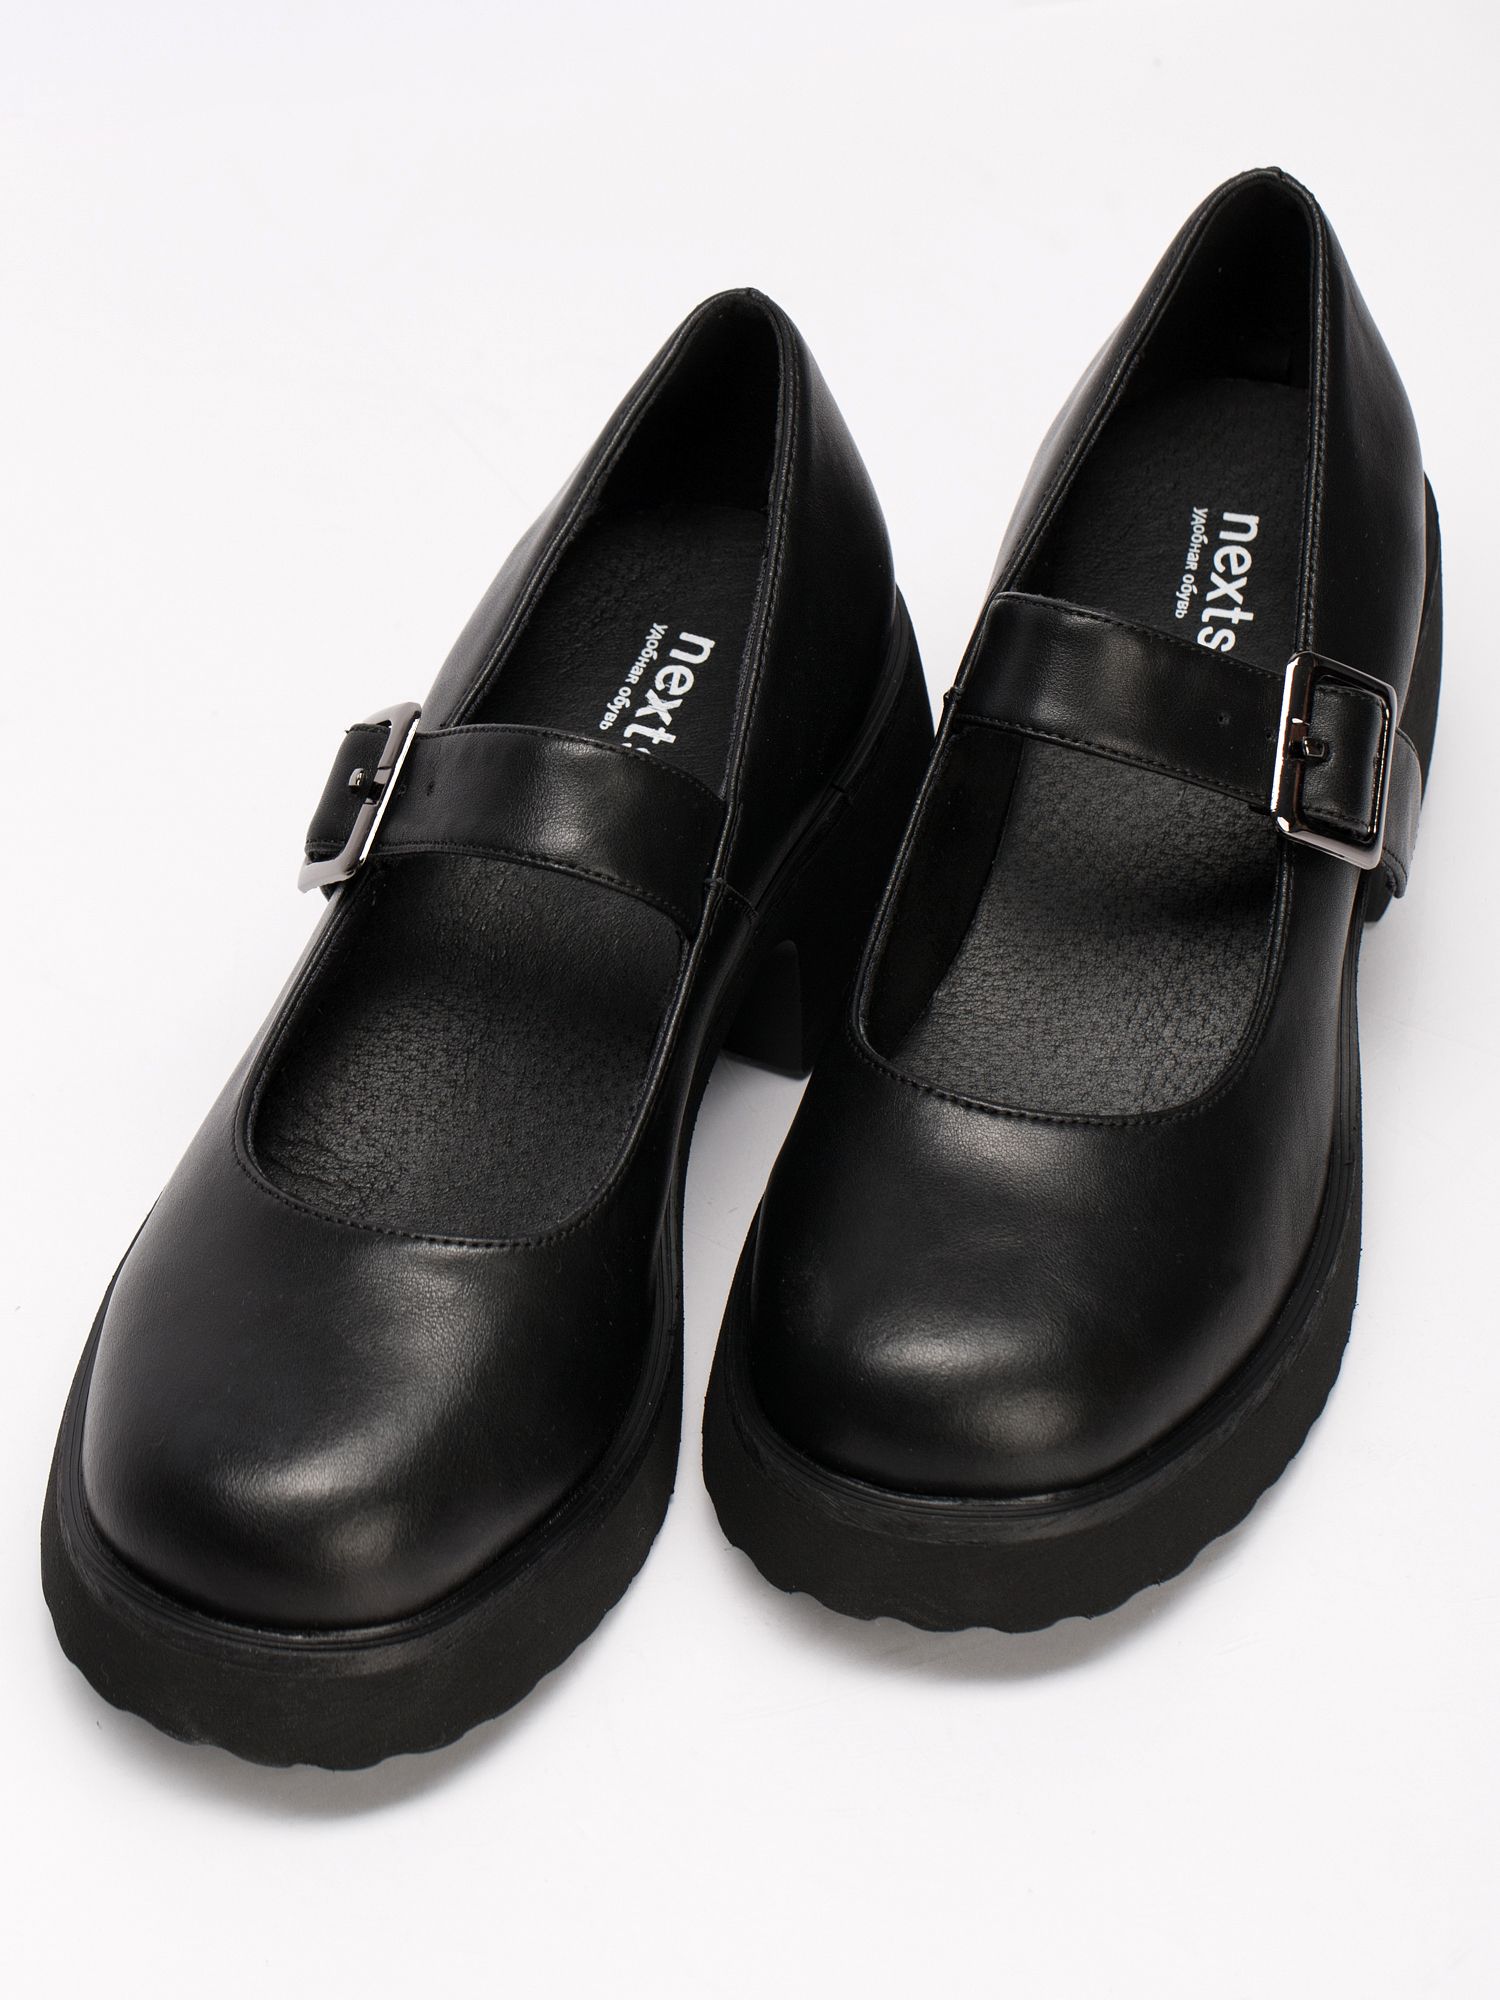 Туфли женские натуральная кожа черные на каблуке осенние KF329-010K